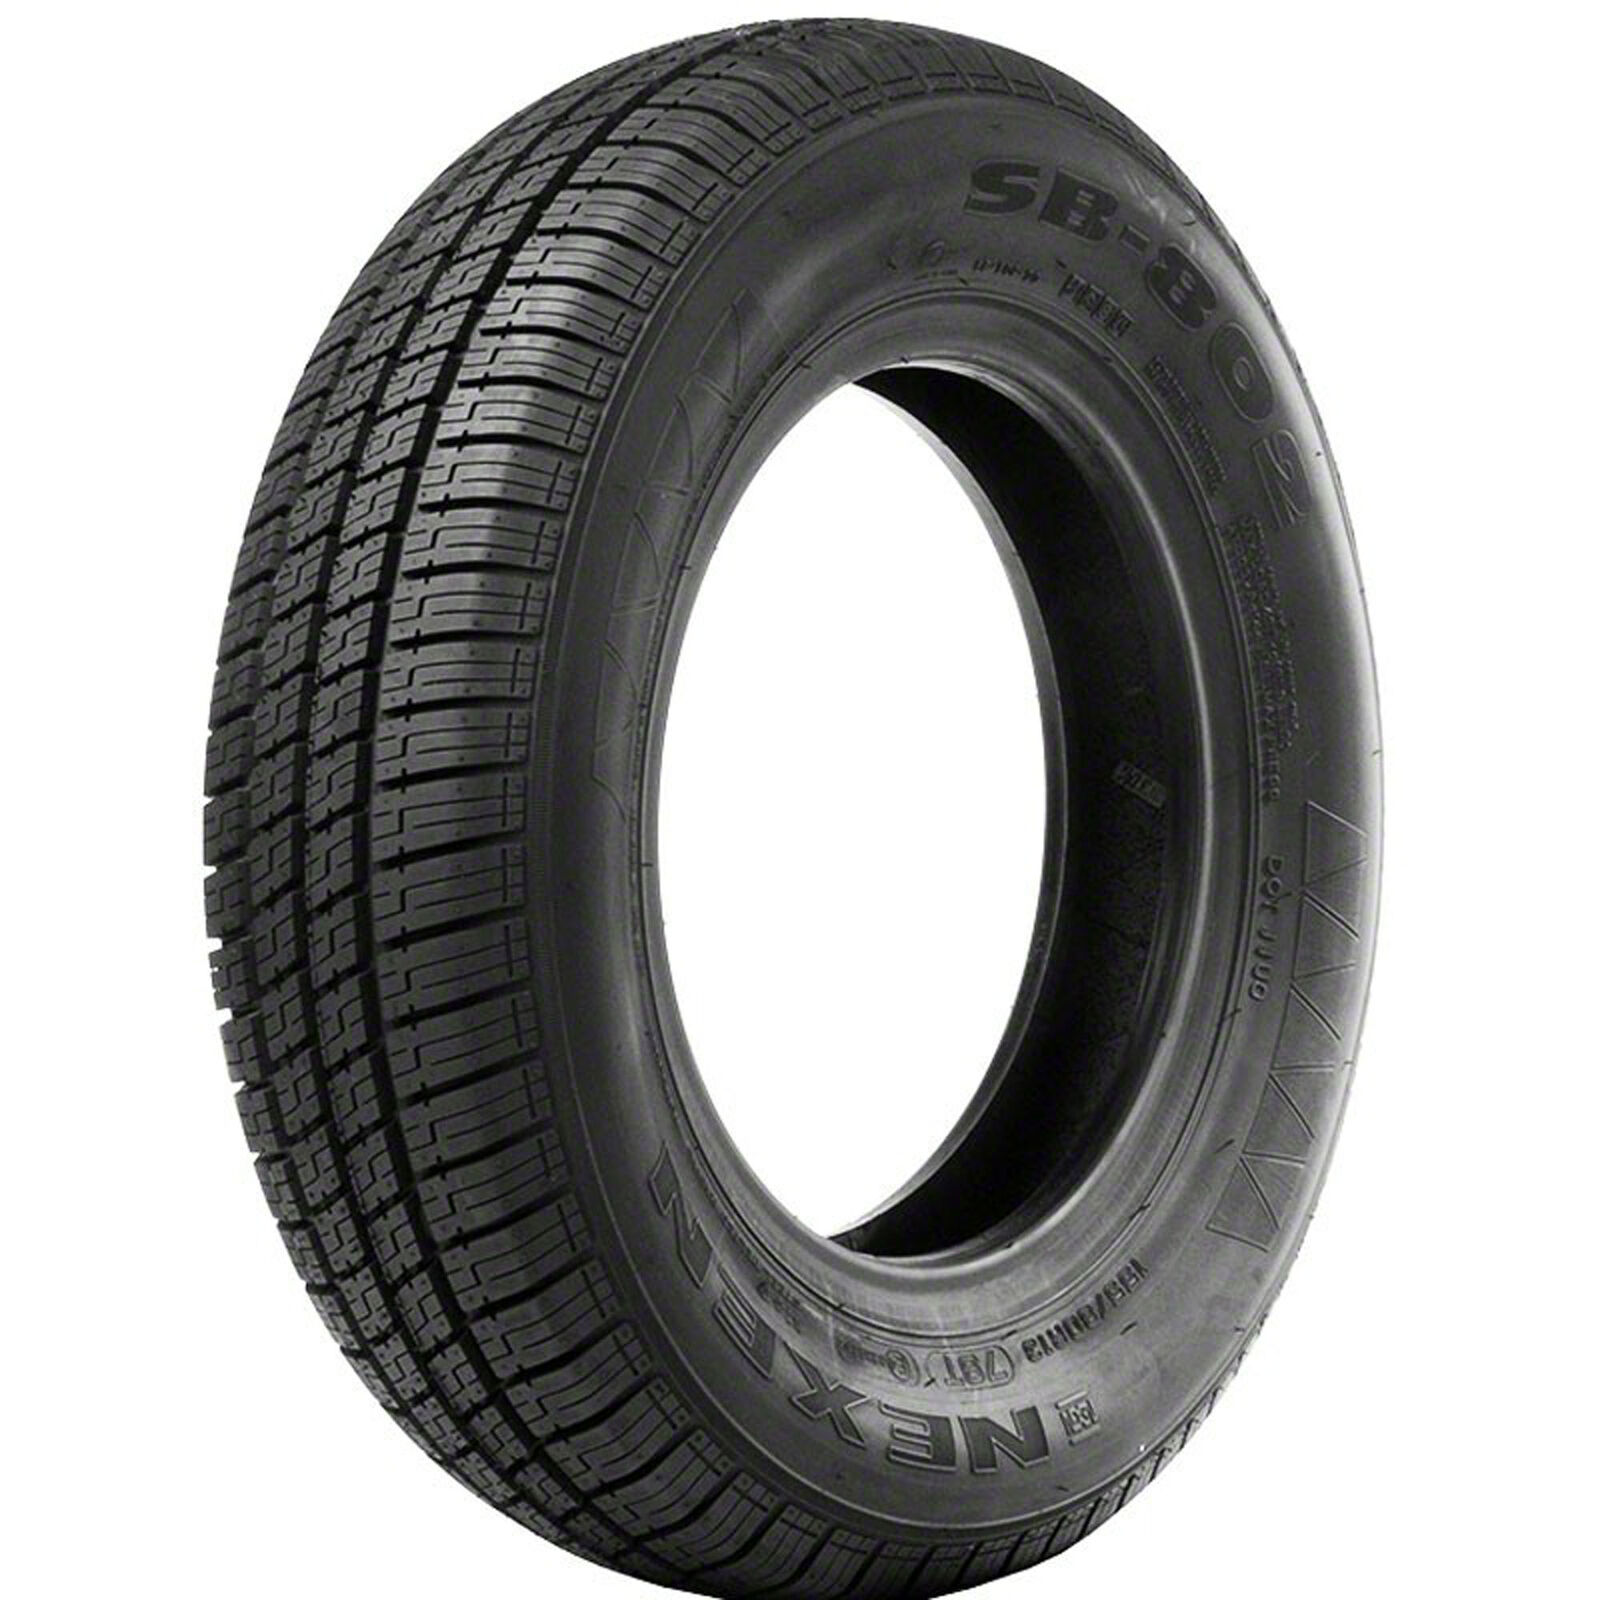 2 New Nexen Sb802  - 165/80r15 Tires 1658015 165 80 15